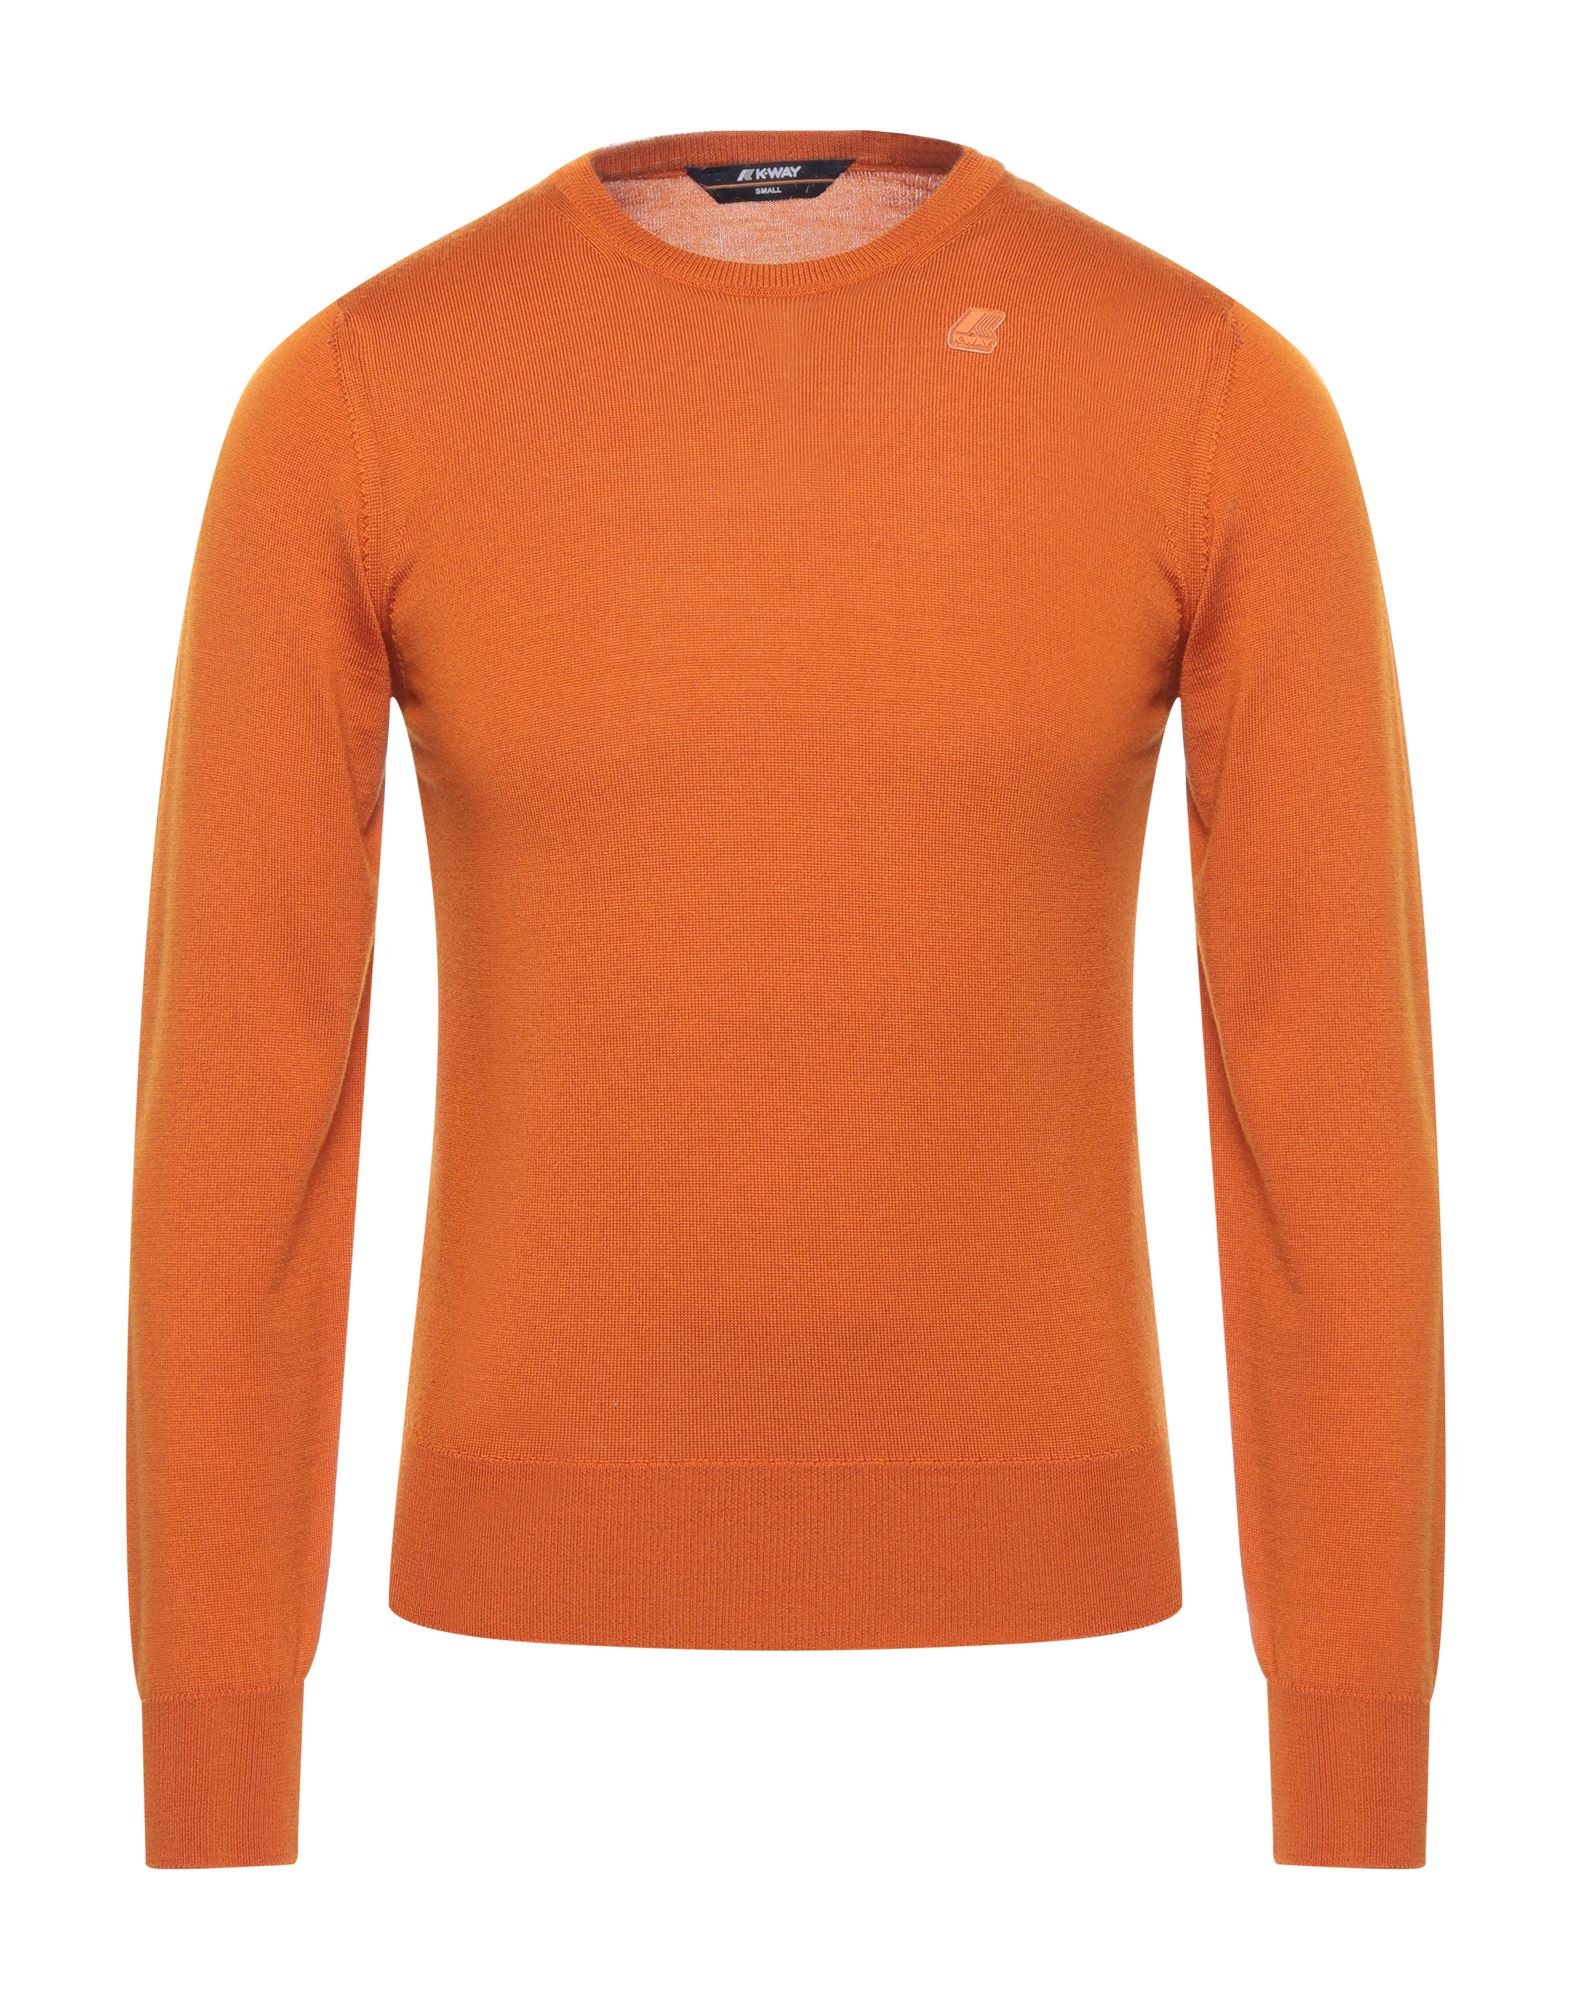 K-way Sweaters In Orange